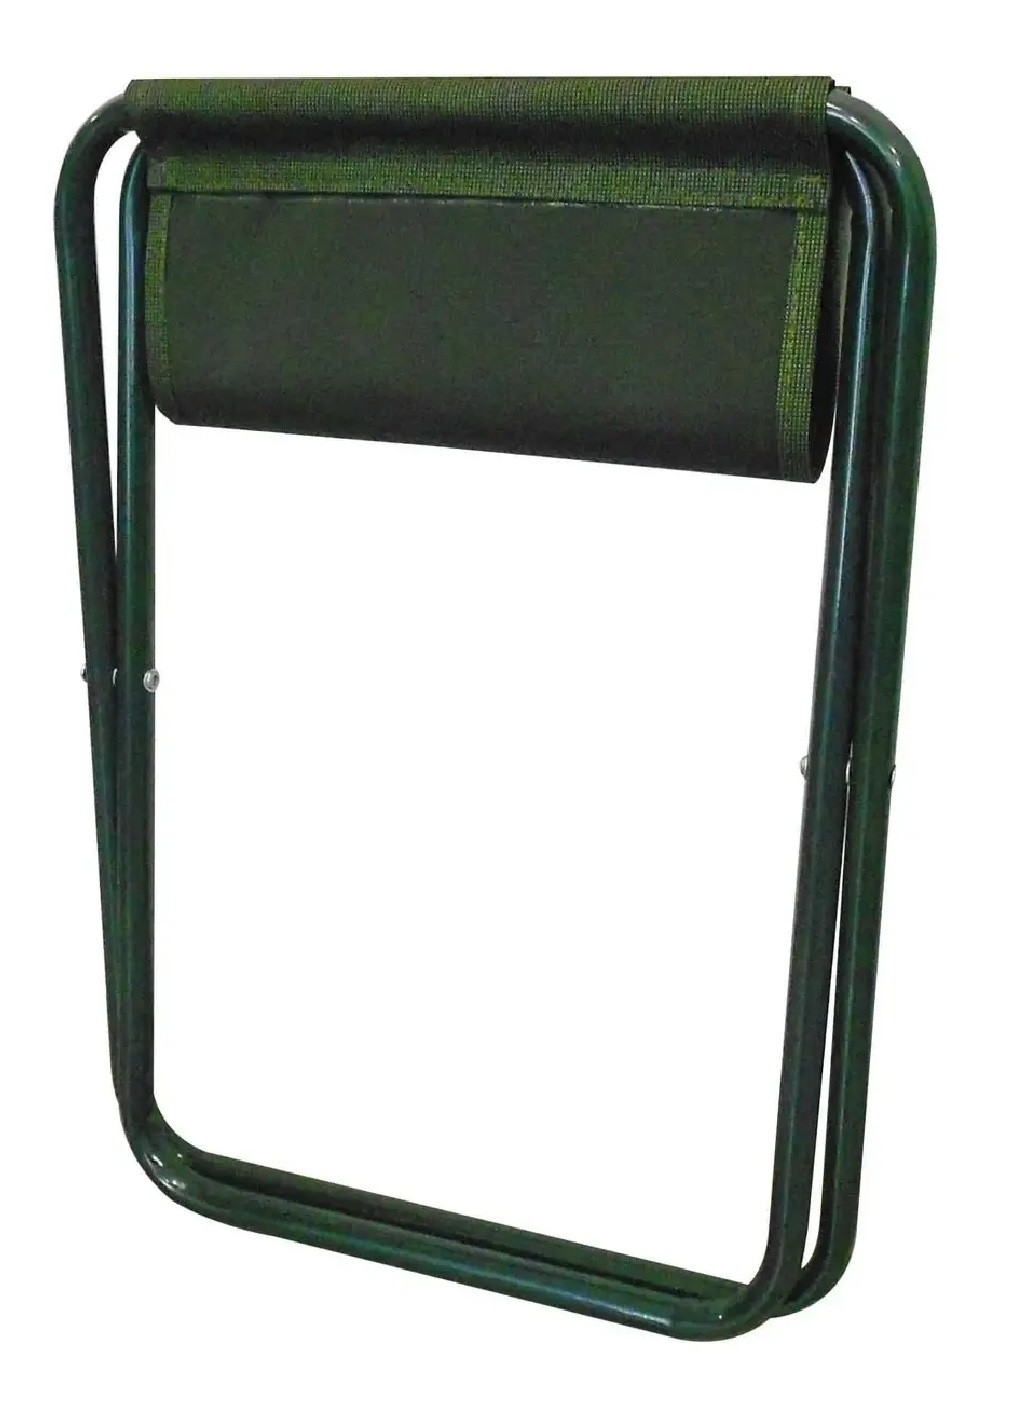 Раскладной компактный легкий стул без спинки для отдыха дачи рыбалки туризма кемпинга 39х29х34,5 см (475298-Prob) Зеленый Unbranded (265391183)